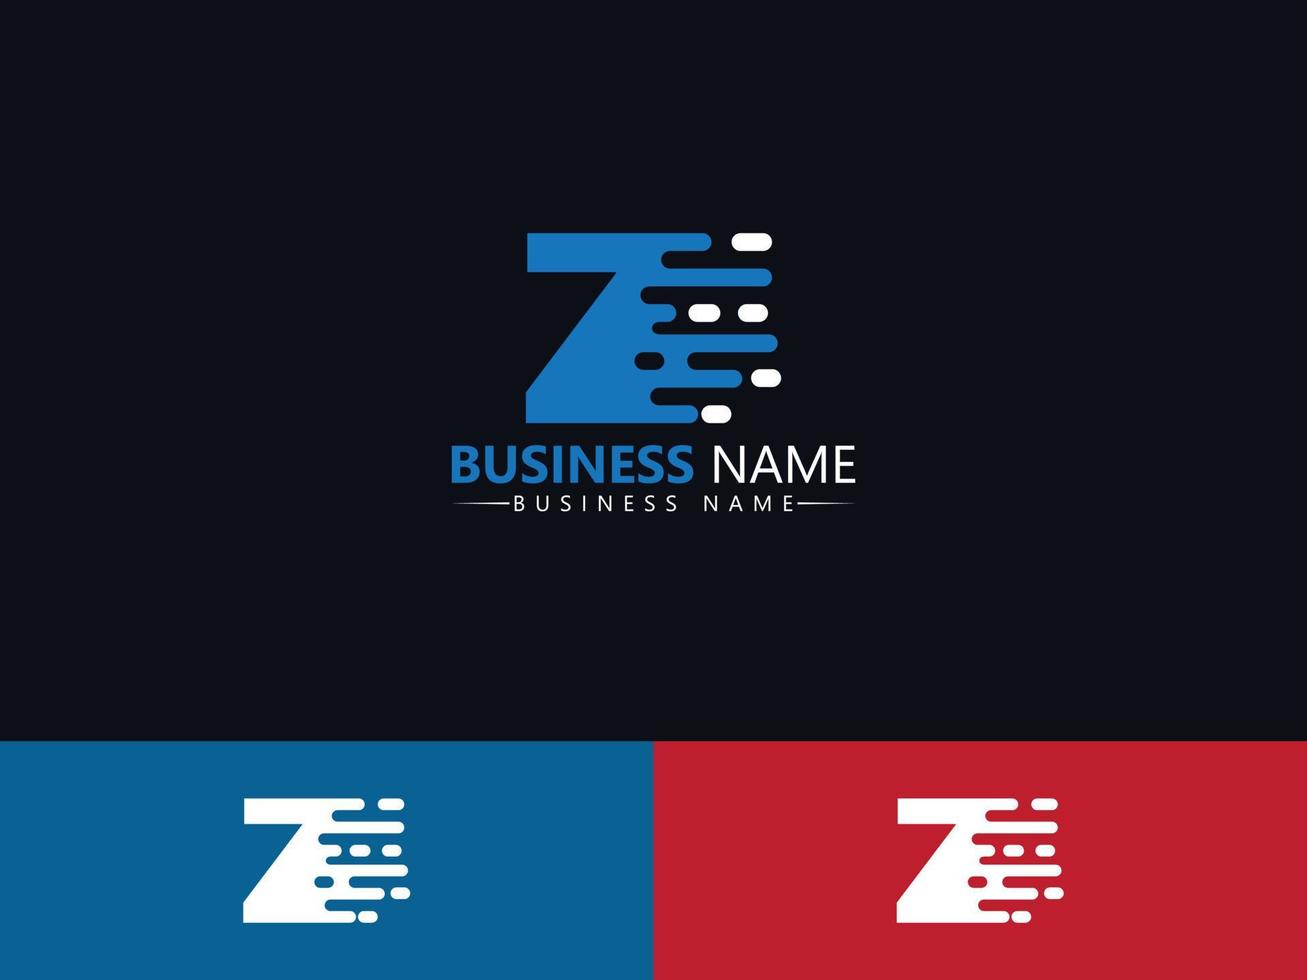 carta z zz design de ícone de logotipo de entrega expressa vetor